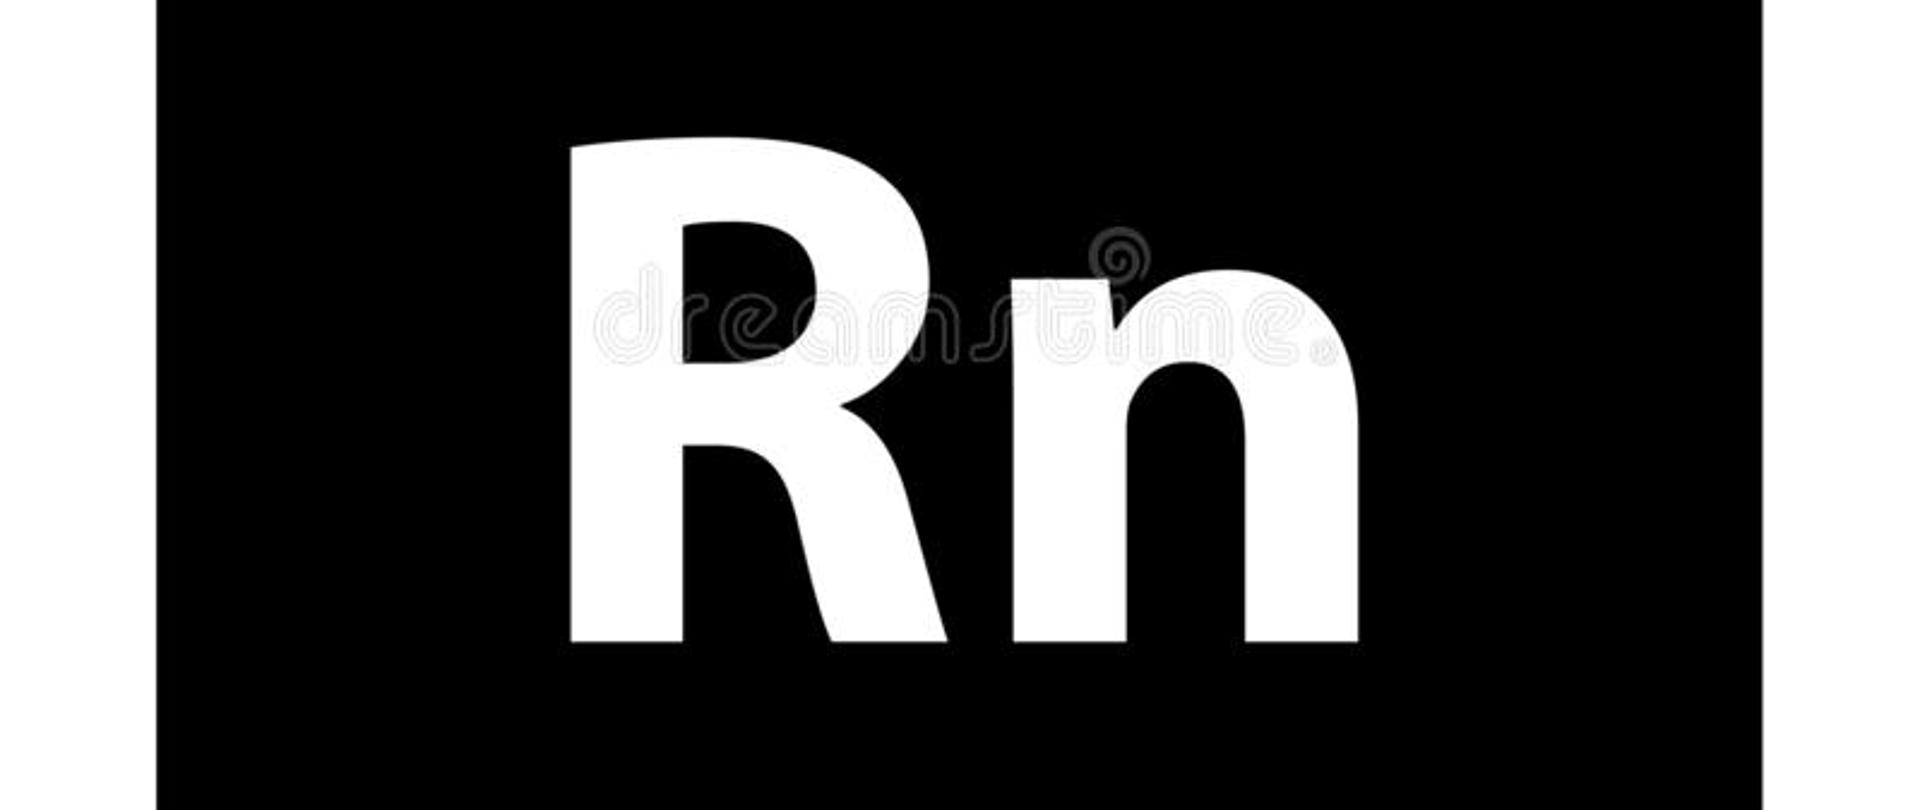 Na grafice znajduje się napis RADON wraz z symbolem Rn oraz oznaczeniem 86. Tło jest czarne. Obramowanie - białe.